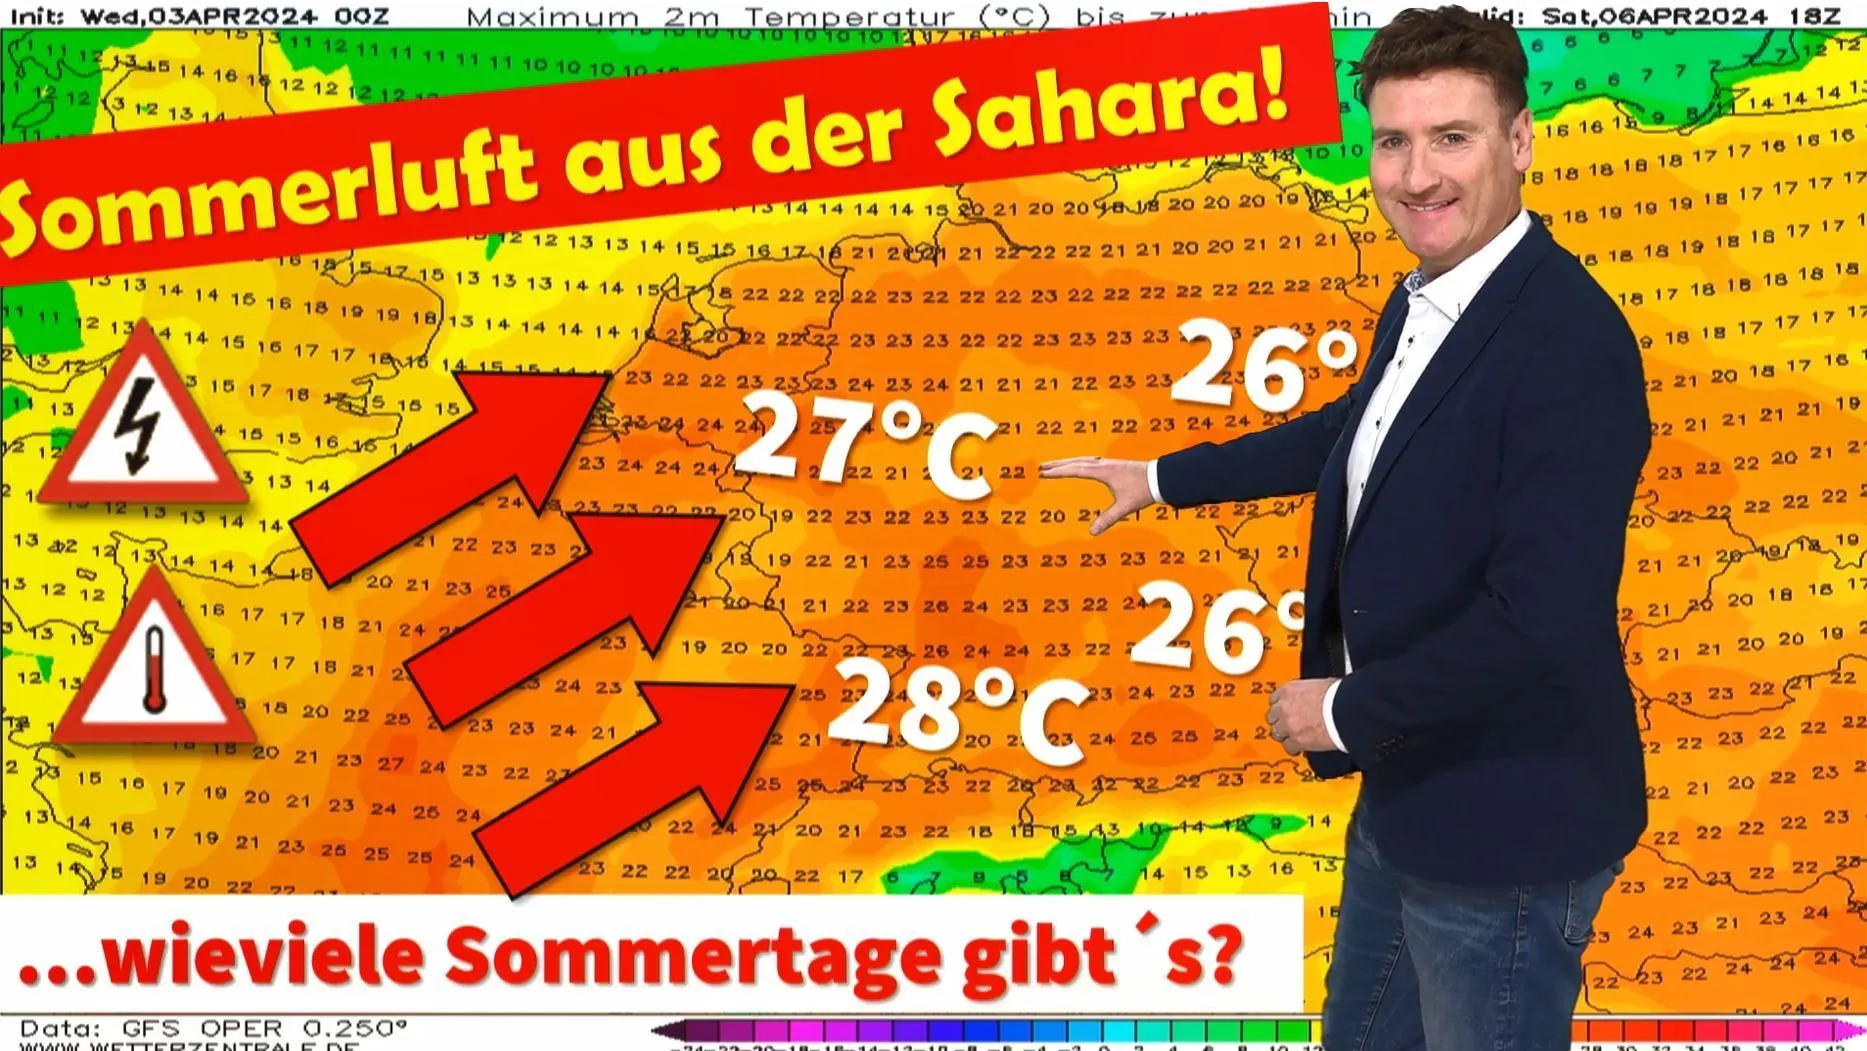 Tiempo para mayores de 25 años a partir del sábado Increíble: ¡tiempo veraniego a principios de abril! ¿Hasta cuándo hará calor y verano en Alemania?